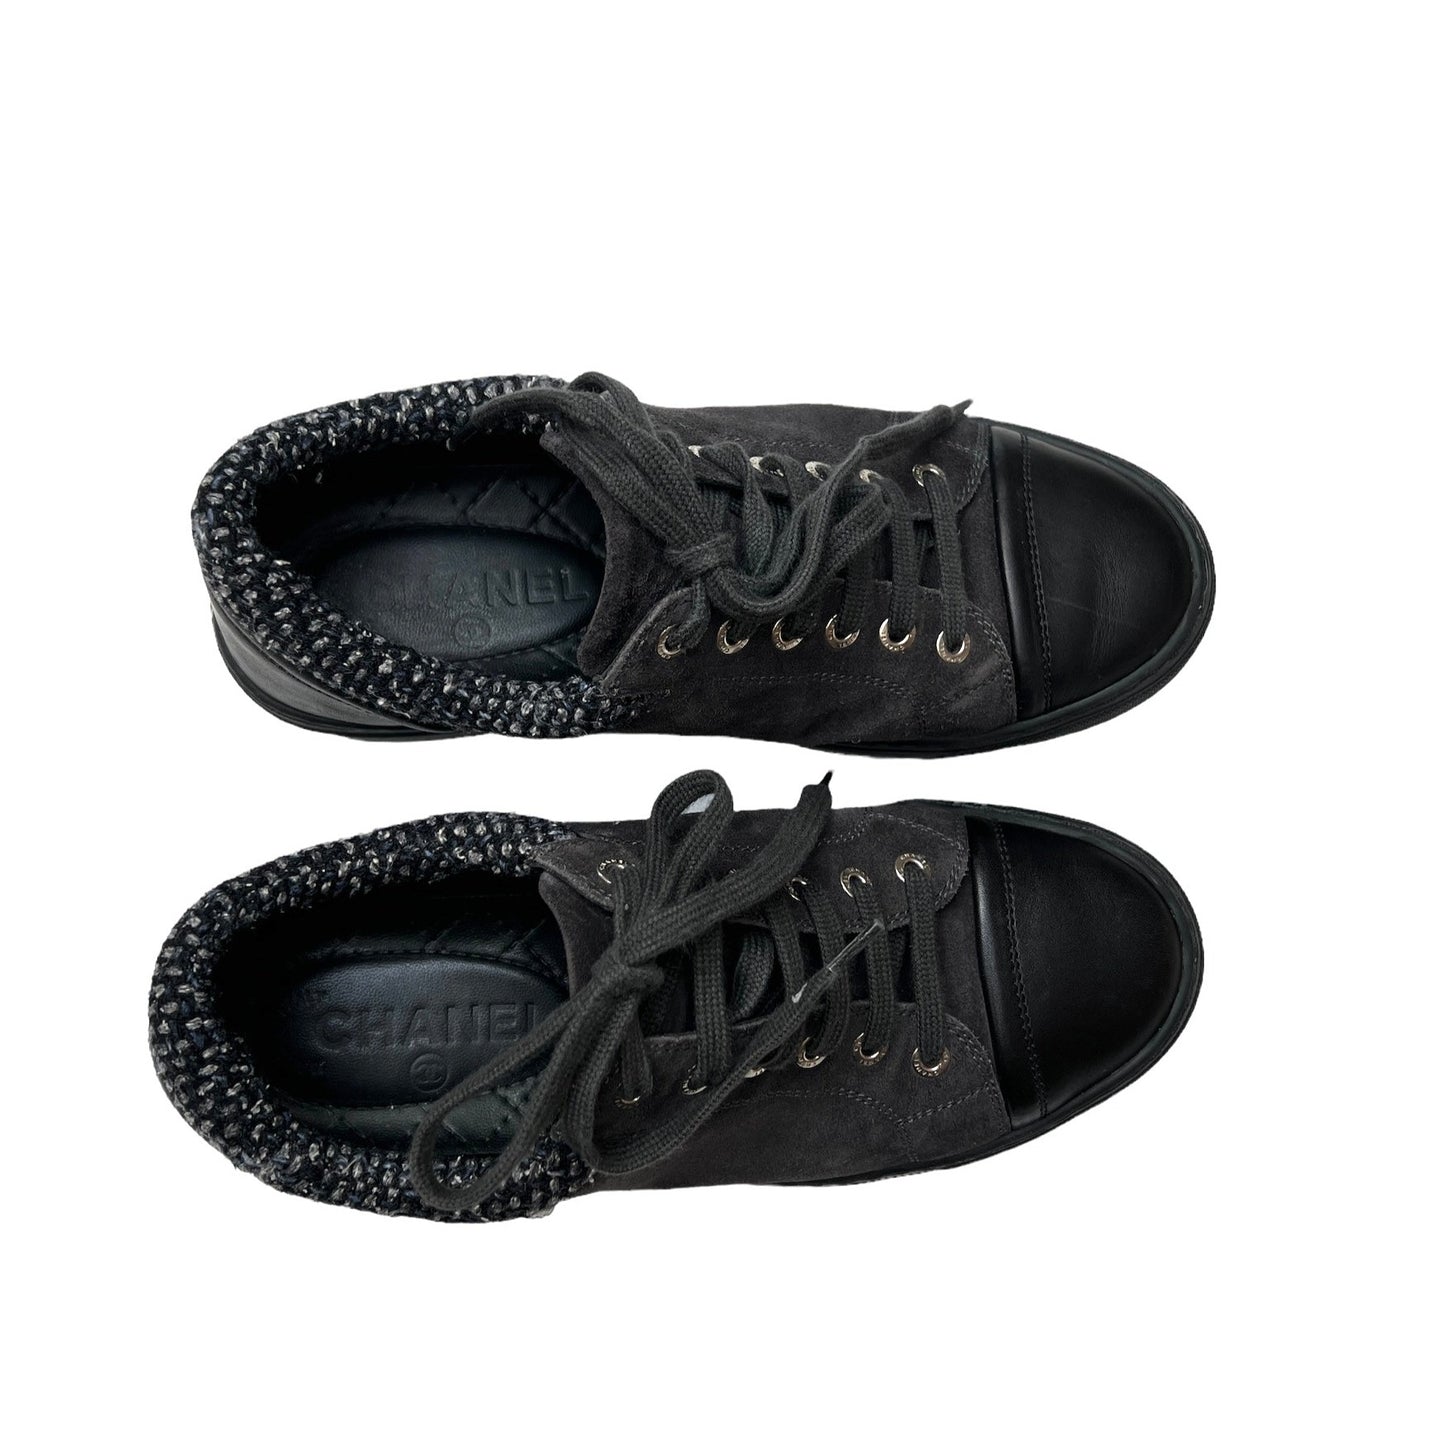 Black Suede Sneakers - 7